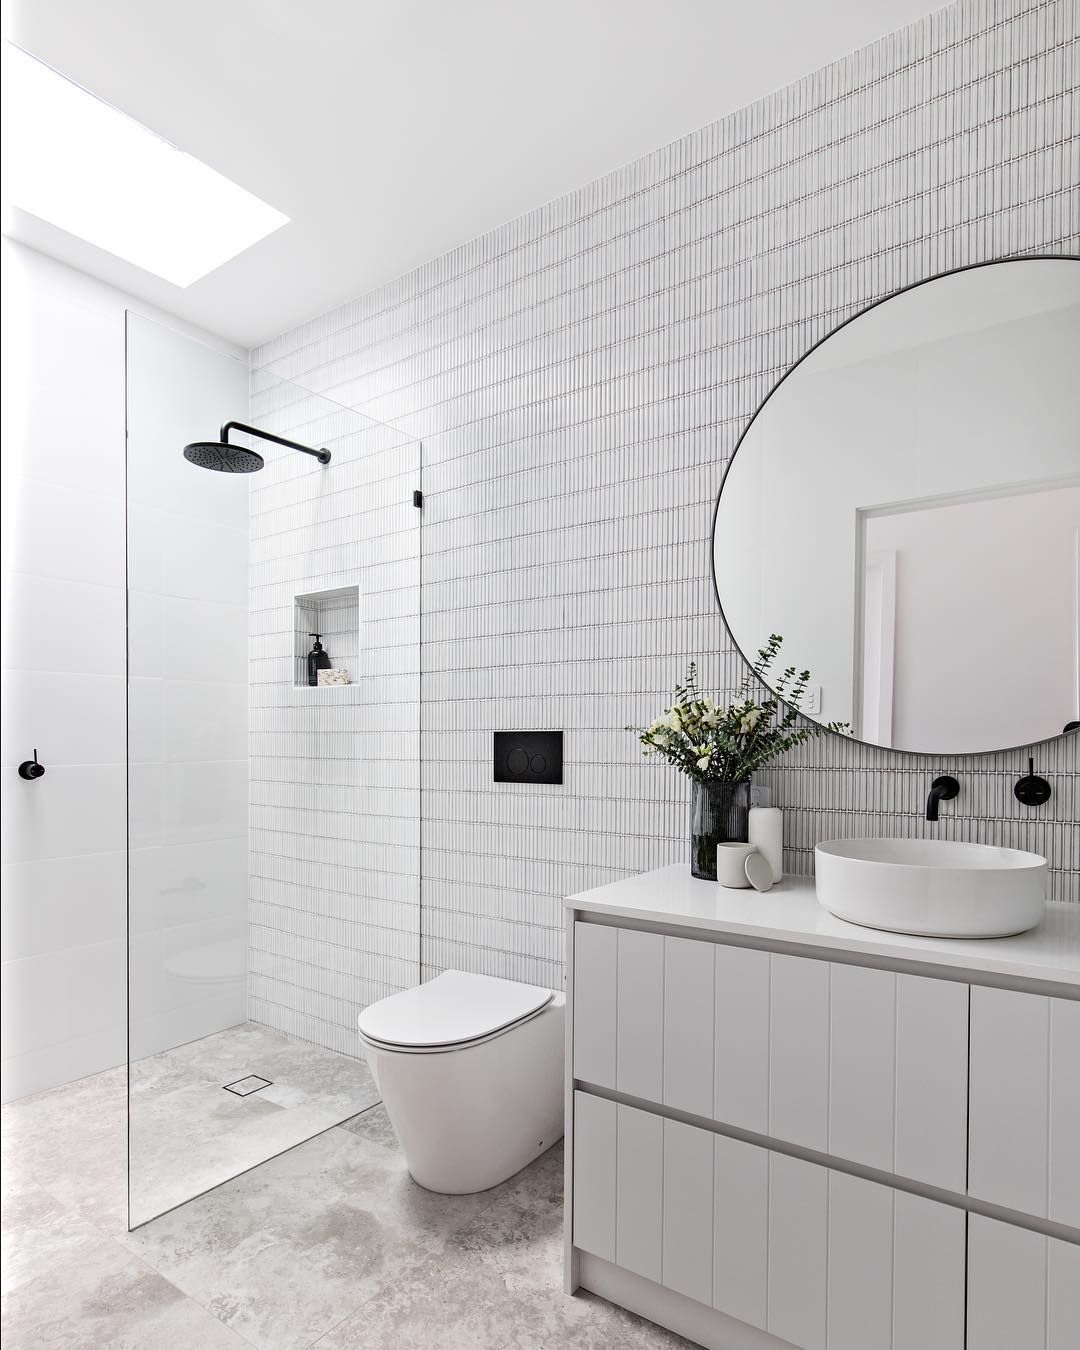 Scandinavian Bathroom with Black Hardware Fixtures via @the_stables_